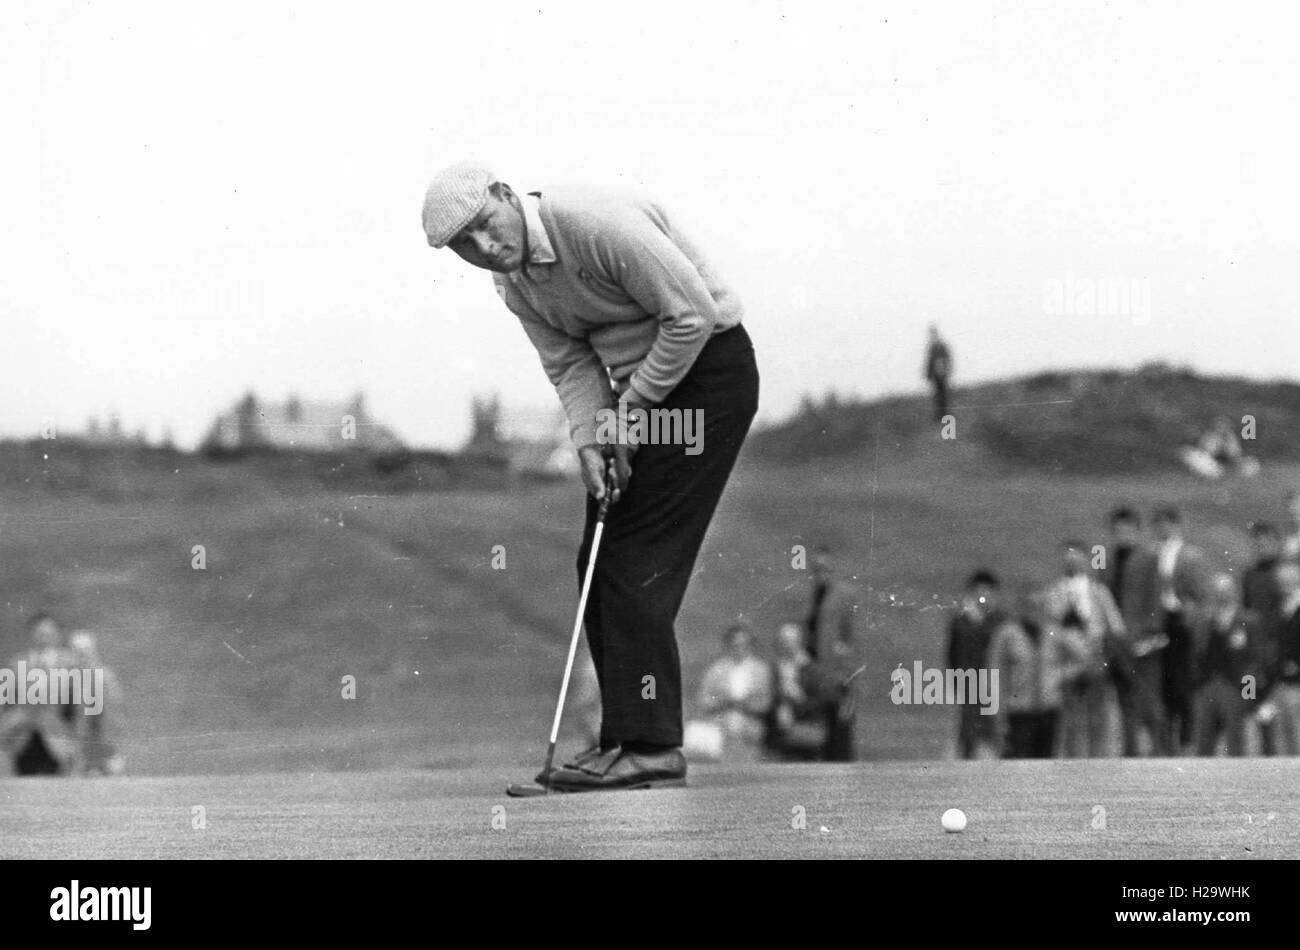 ARNOLD PALMER (10. September 1929 - 25. September 2016) war ein amerikanischer Profi-Golfer, der im Allgemeinen als einer der größten Spieler in der Profi-Golf-Geschichte gilt. Er gewann zahlreiche Events auf der PGA Tour und Champions Tour, bis 1955 zurückreichen. Den Spitznamen "The King", war er einer der populärsten Stars des Golfsports und seine wichtigsten Wegbereiter, weil er der erste Superstar der Sport Fernsehen alt, war die in den 1950er Jahren begann. Bild: 7. Juni 1965 - putts Southdale, England, Vereinigtes Königreich - ARNOLD PALMER während der 1965 Open Championship in Royal Birkdale. (Kredit-Bild: © G Stockfoto